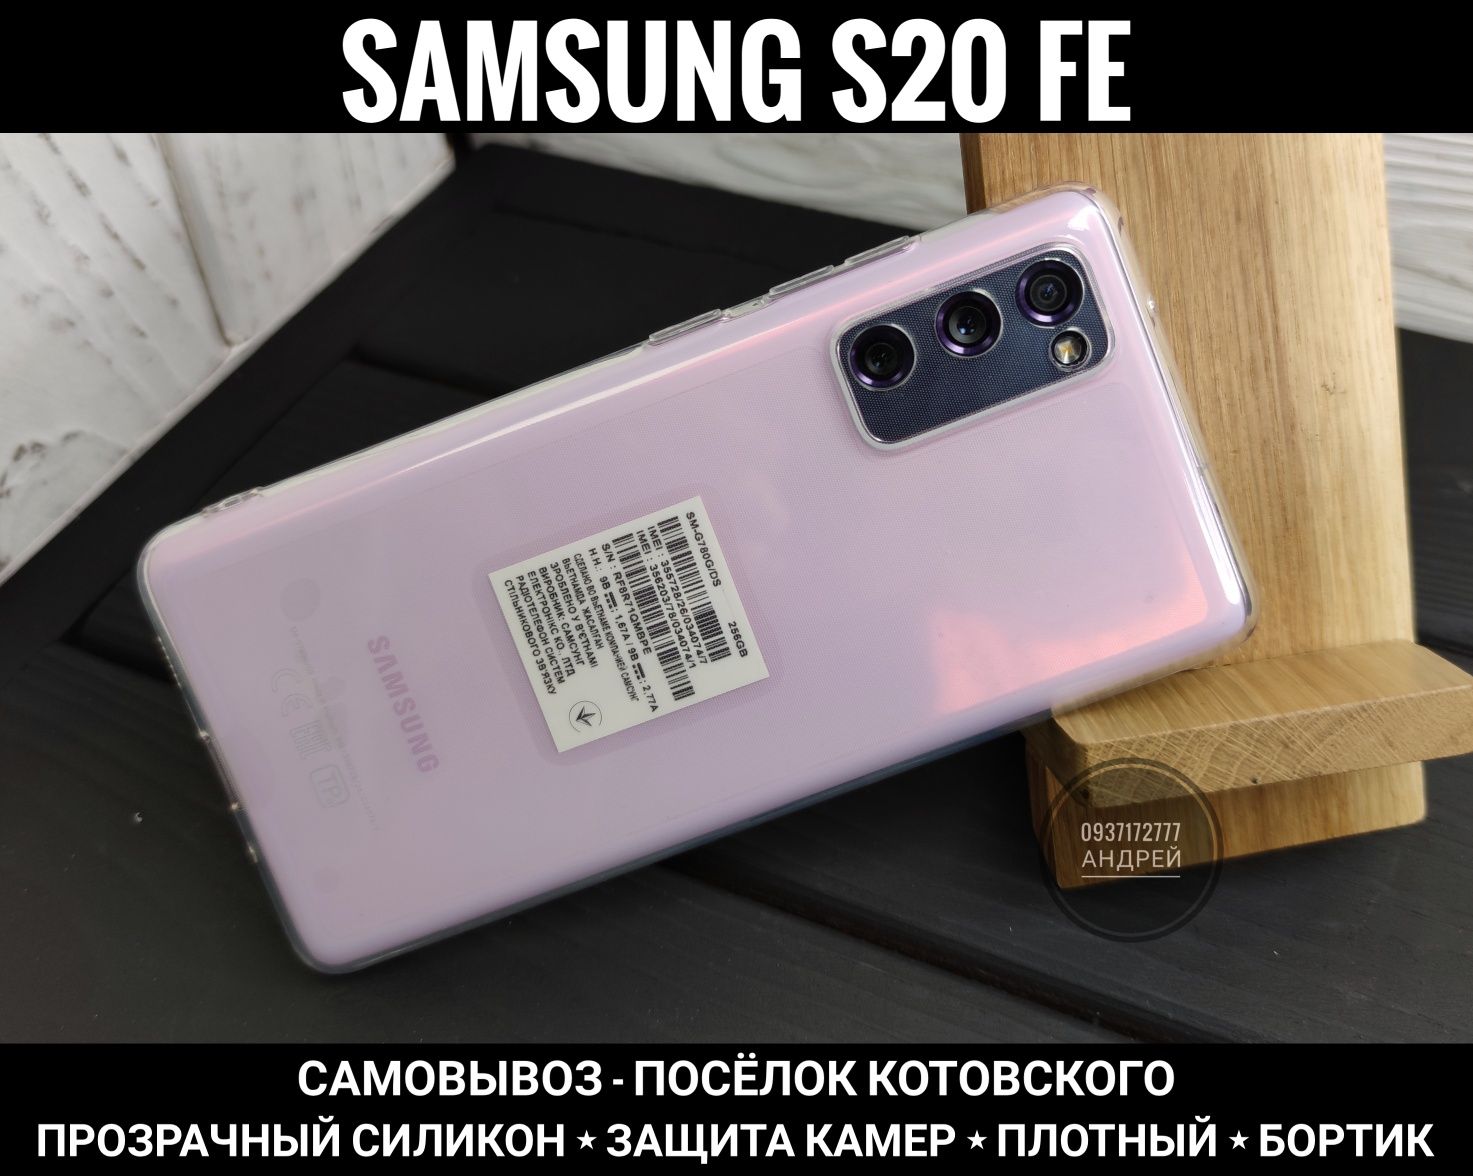 Чехол плотный силикон Samsung S20 FE. Защита камер. Прозрачный